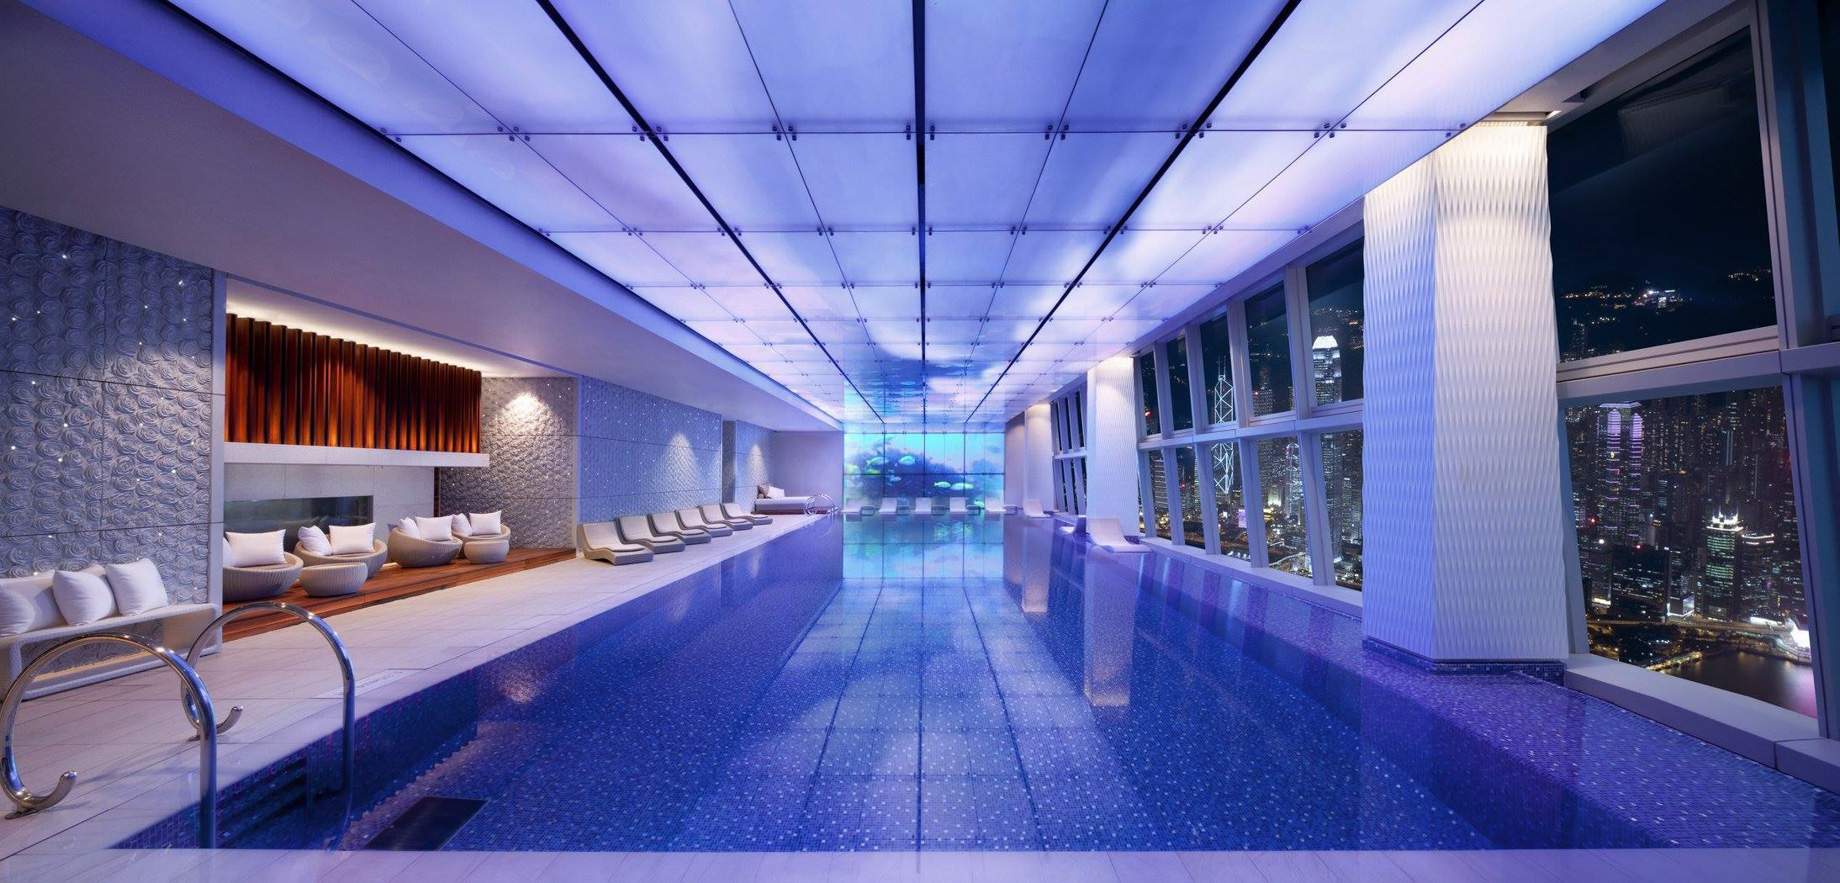 The Ritz-Carlton, Hong Kong Hotel – West Kowloon, Hong Kong – Indoor Pool Night